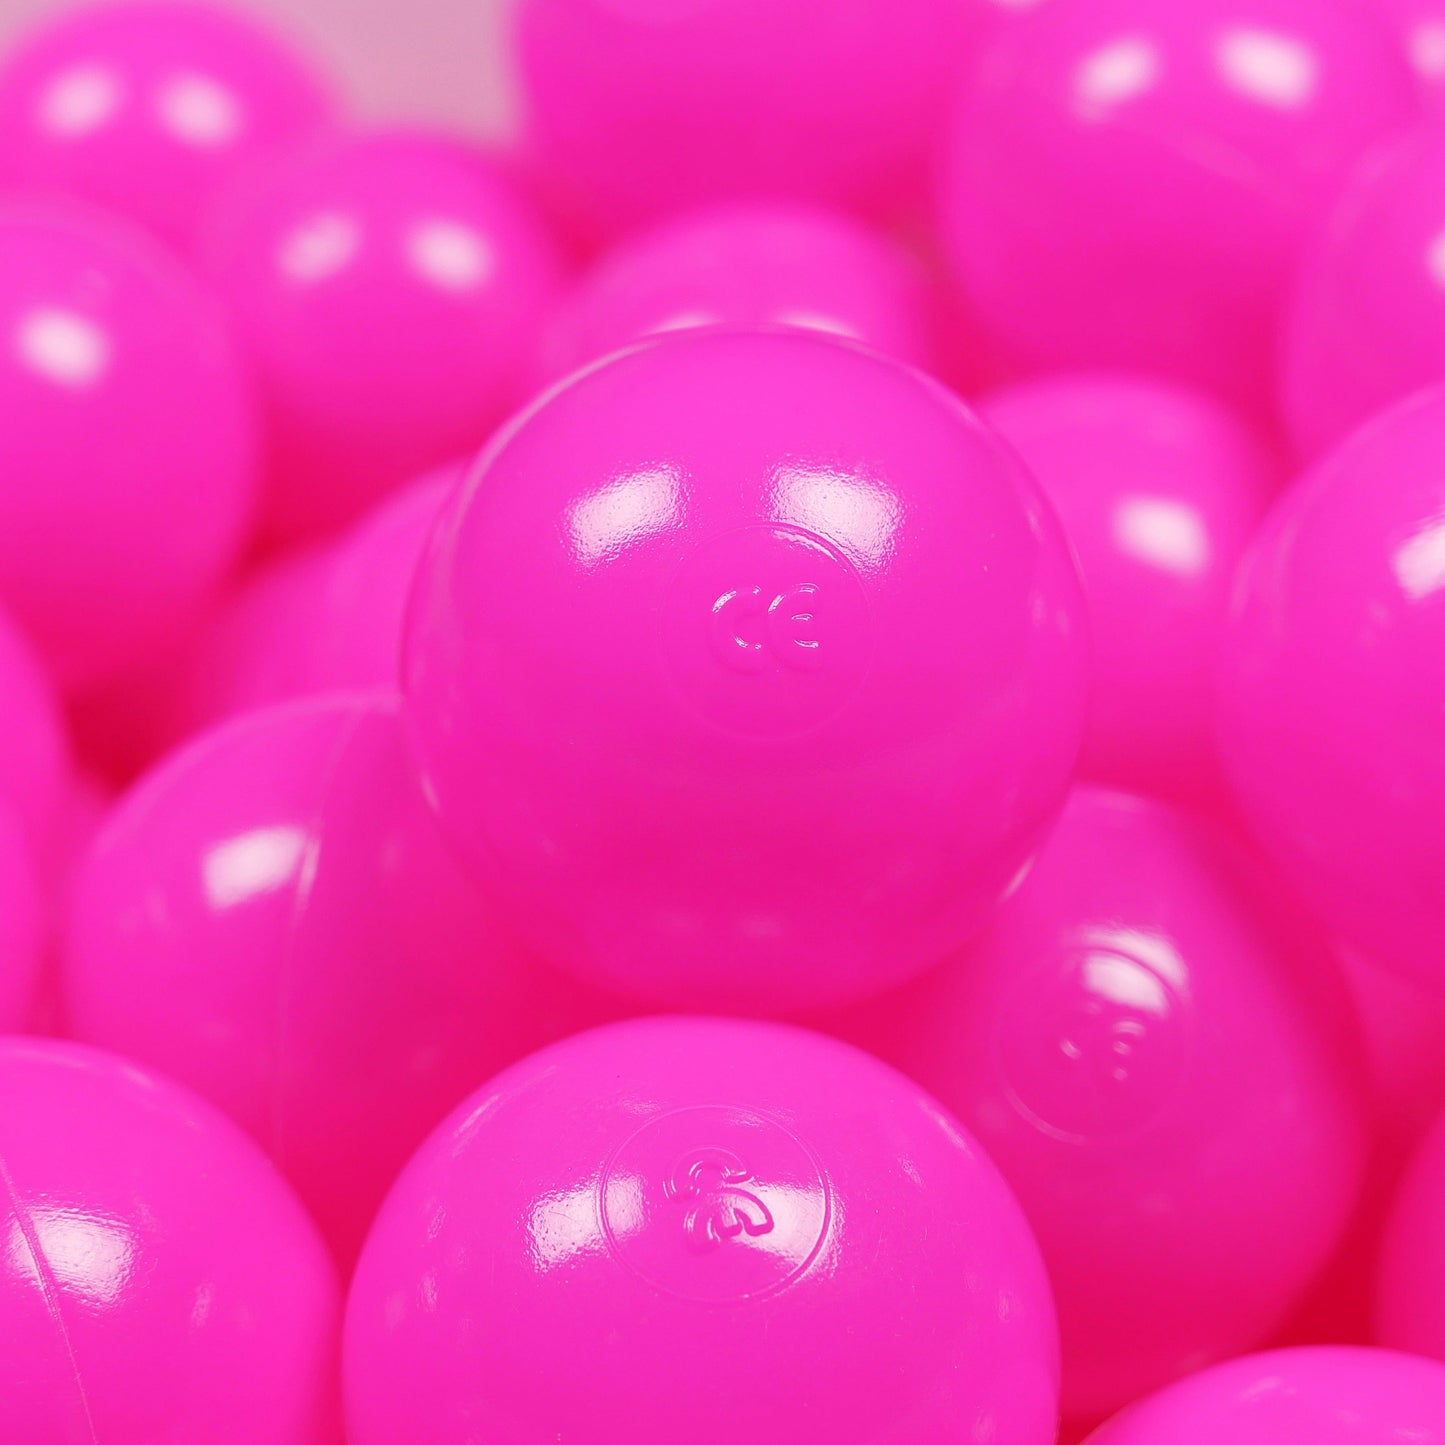 Balles de jeu ø7cm 100 pièces rose